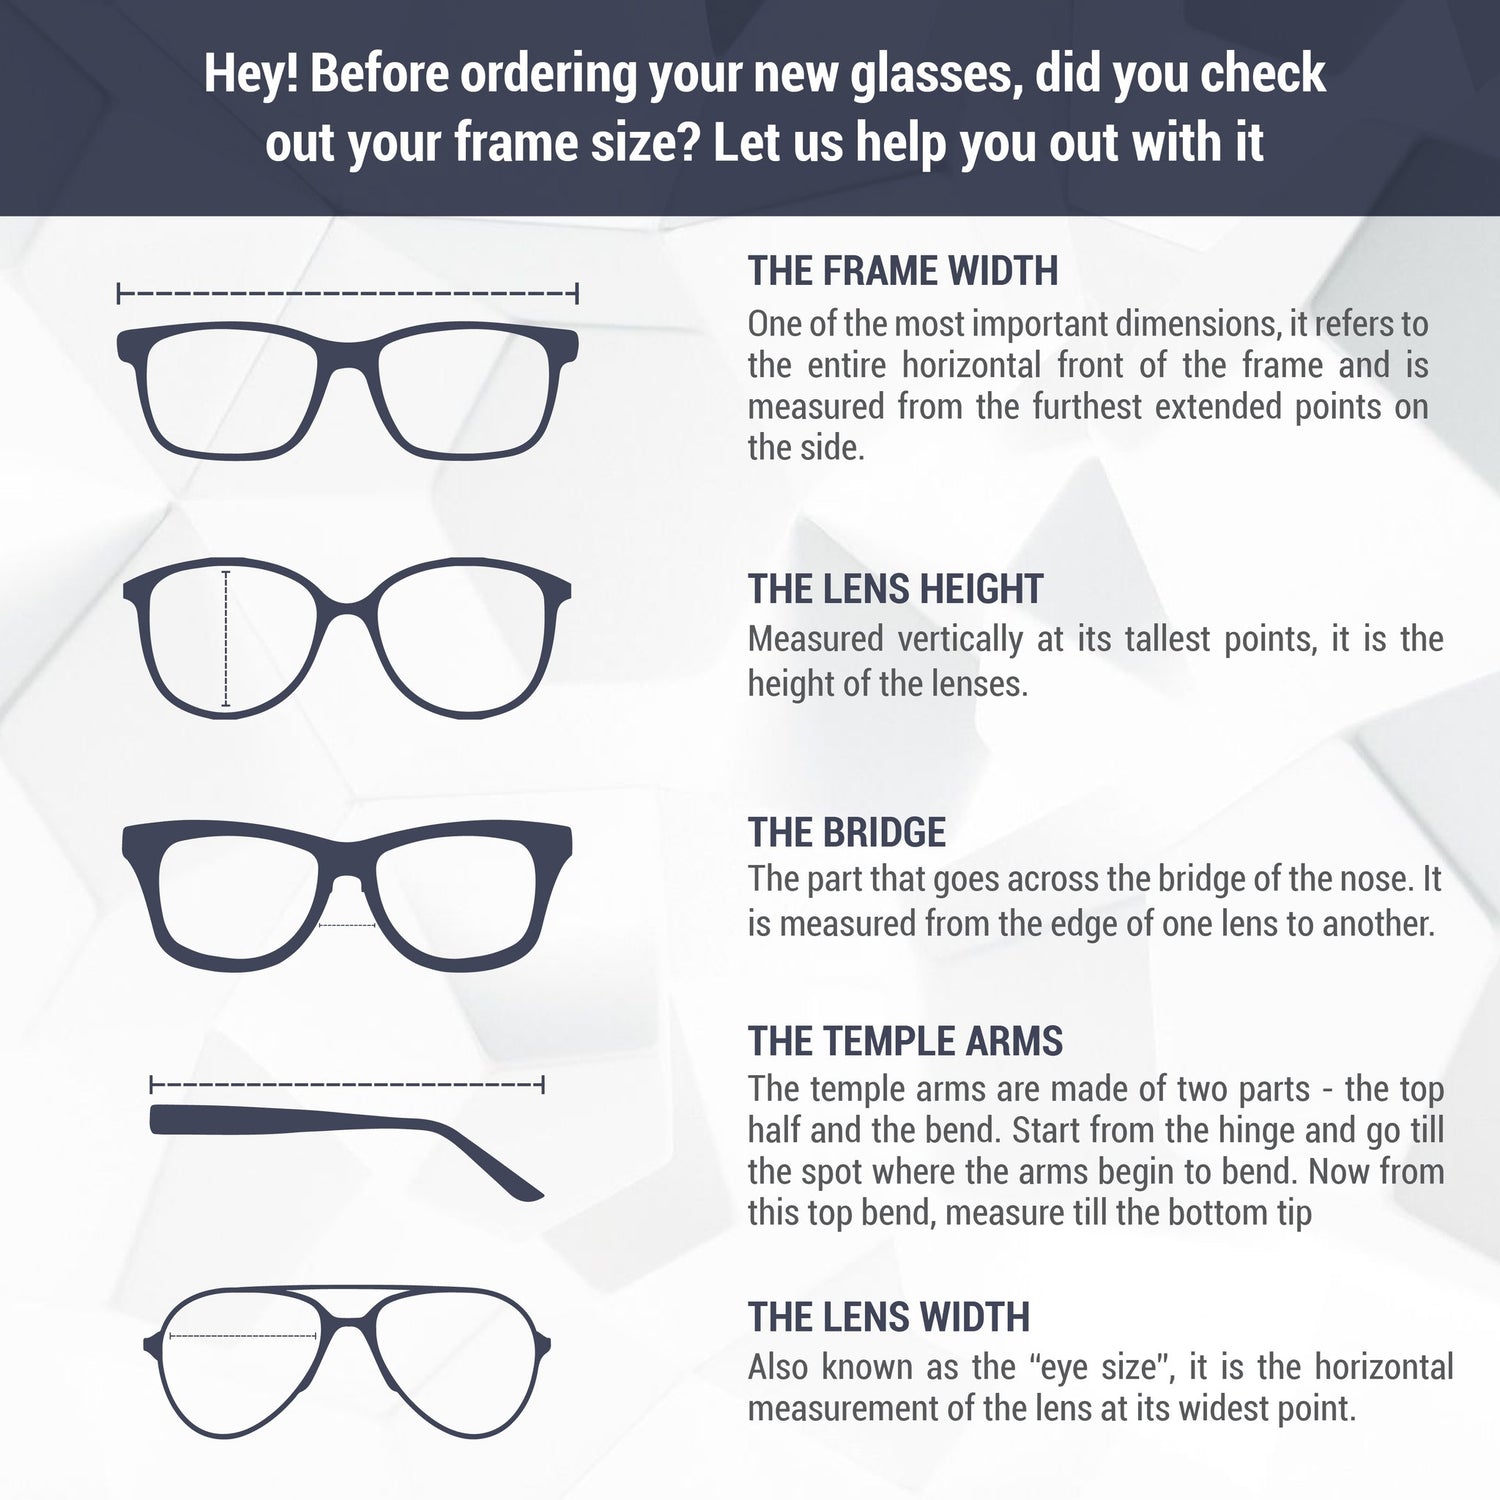 Boss - Monture de lunettes Hugo Boss | Modèle 1136